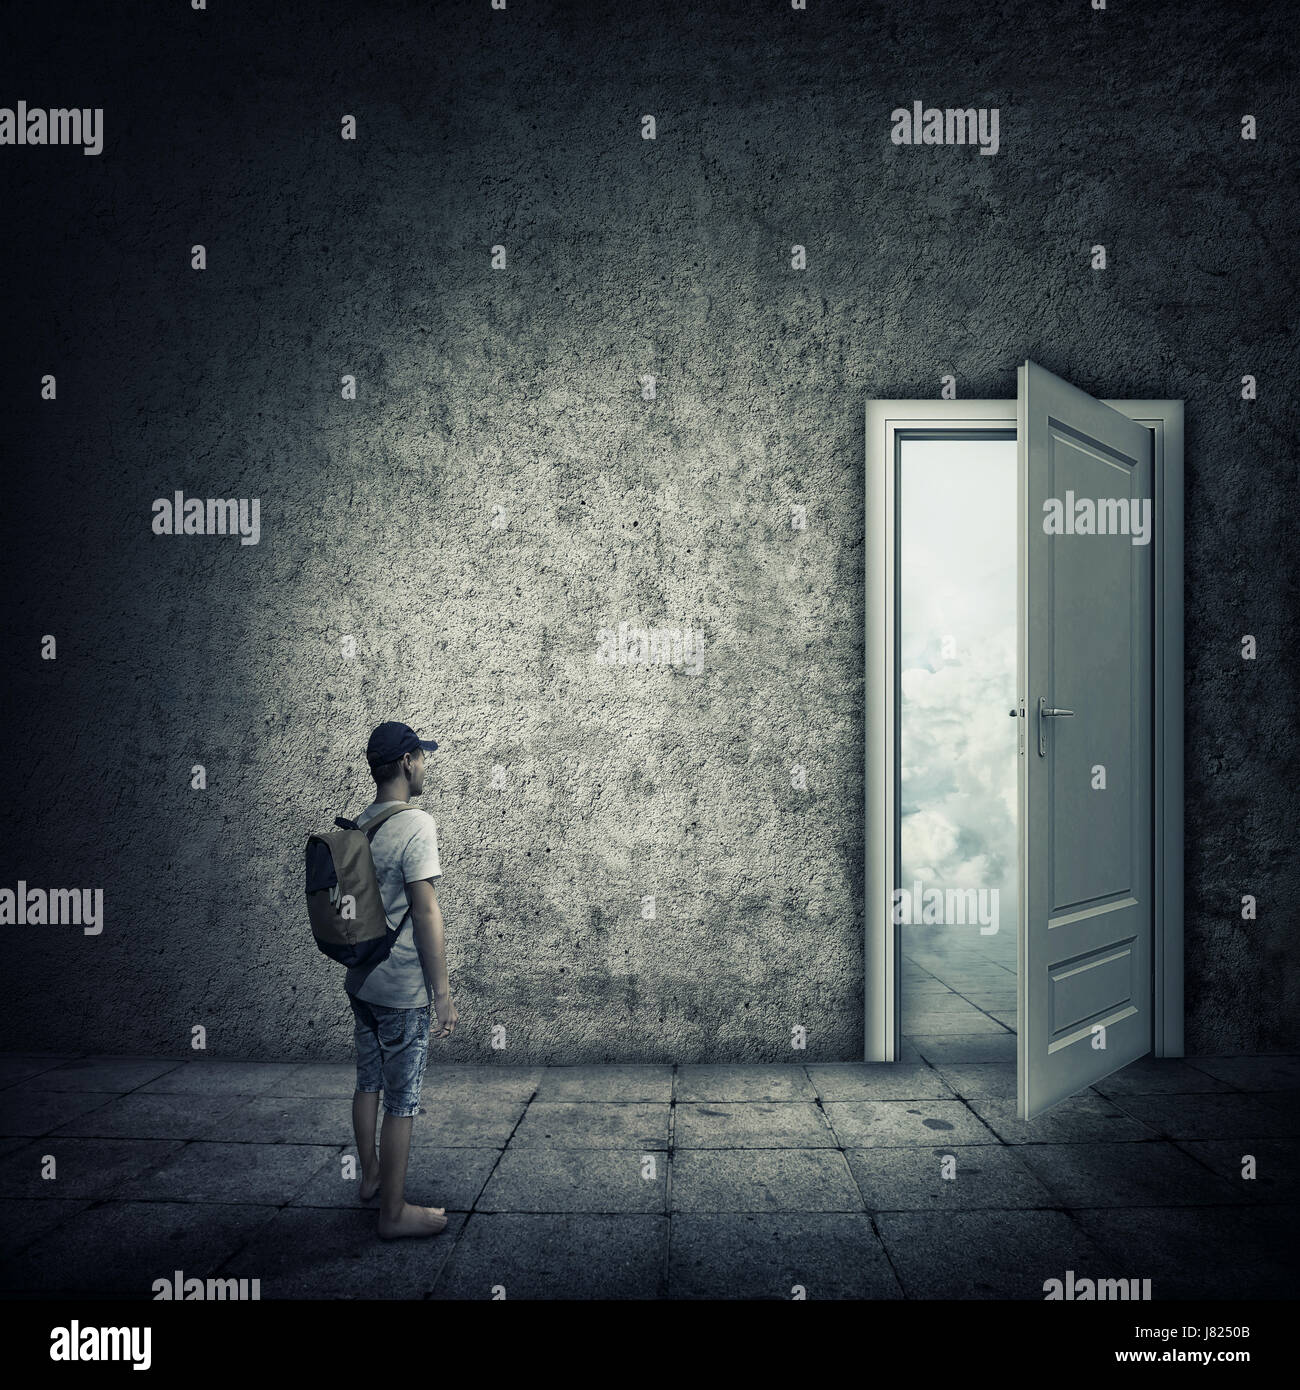 Idea astratta di una persona in piedi in una stanza buia, davanti a una porta aperta. Opportunità di fuga, entrata in un altro mondo. Foto Stock